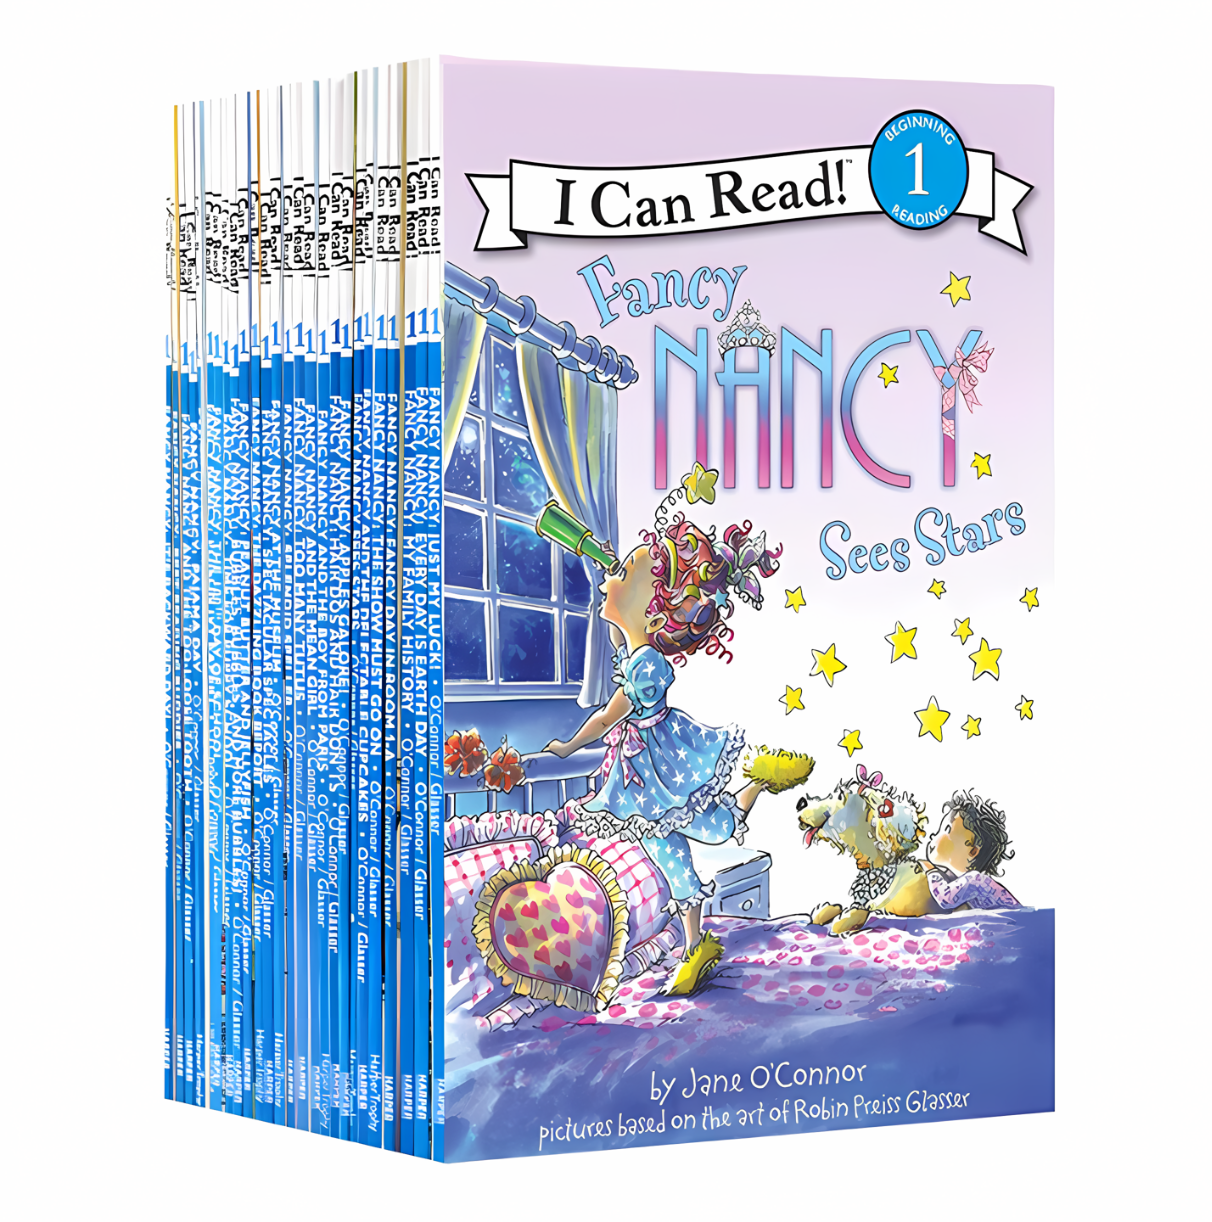 I can read Fancy Nancy 30 books